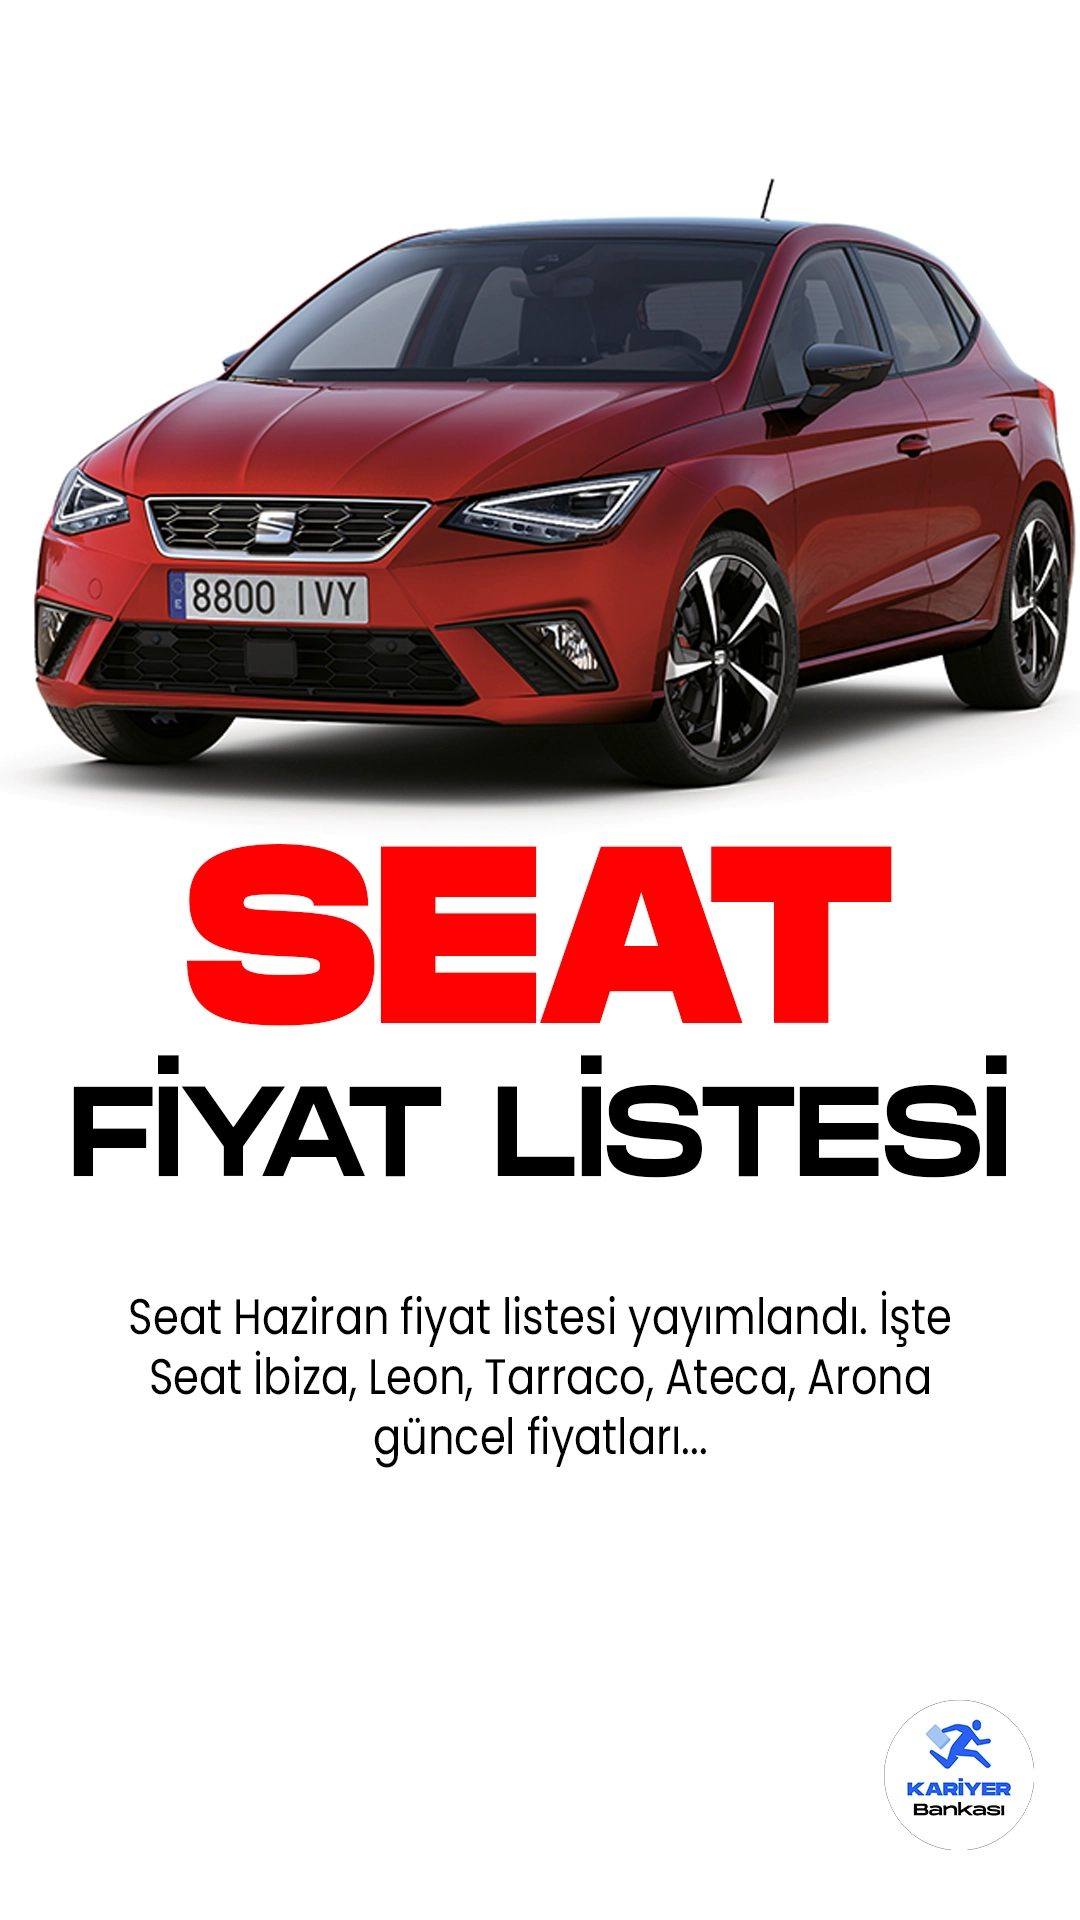 Seat Haziran 2023 Fiyat Listesi Yayımlandı!Seat, geniş ürün gamıyla otomobil severlere çeşitli seçenekler sunuyor. Seat Leon, dinamik tasarımı ve üstün performansıyla öne çıkıyor. Yüksek sürüş konforu ve geniş iç mekanıyla dikkat çeken Seat Ibiza, şehir içi kullanıma uygun bir seçenek sunuyor.